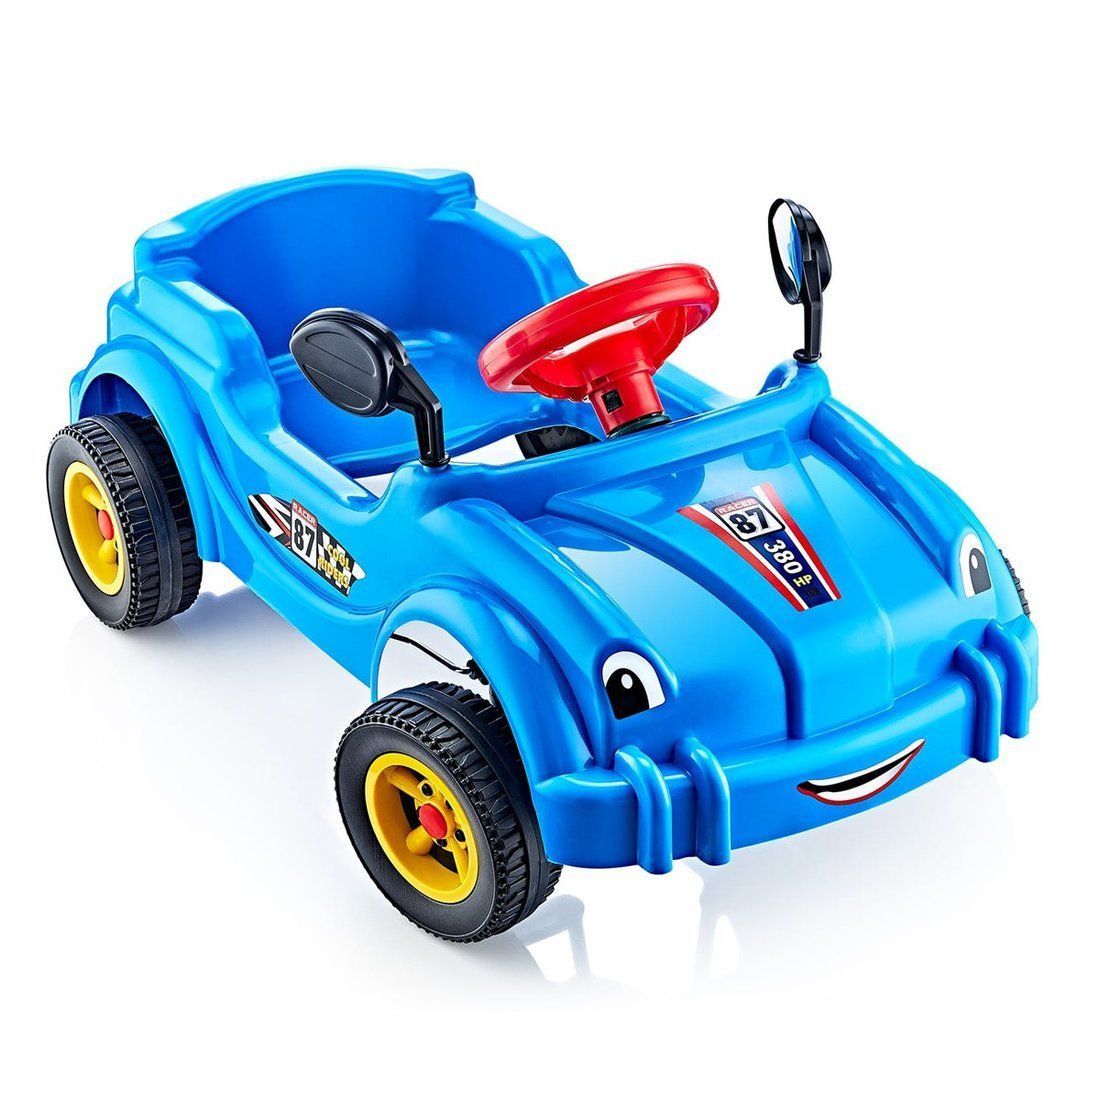 Машина педальная Cool Riders, с клаксоном, синяя машина каталка педальная cool riders с клаксоном красный